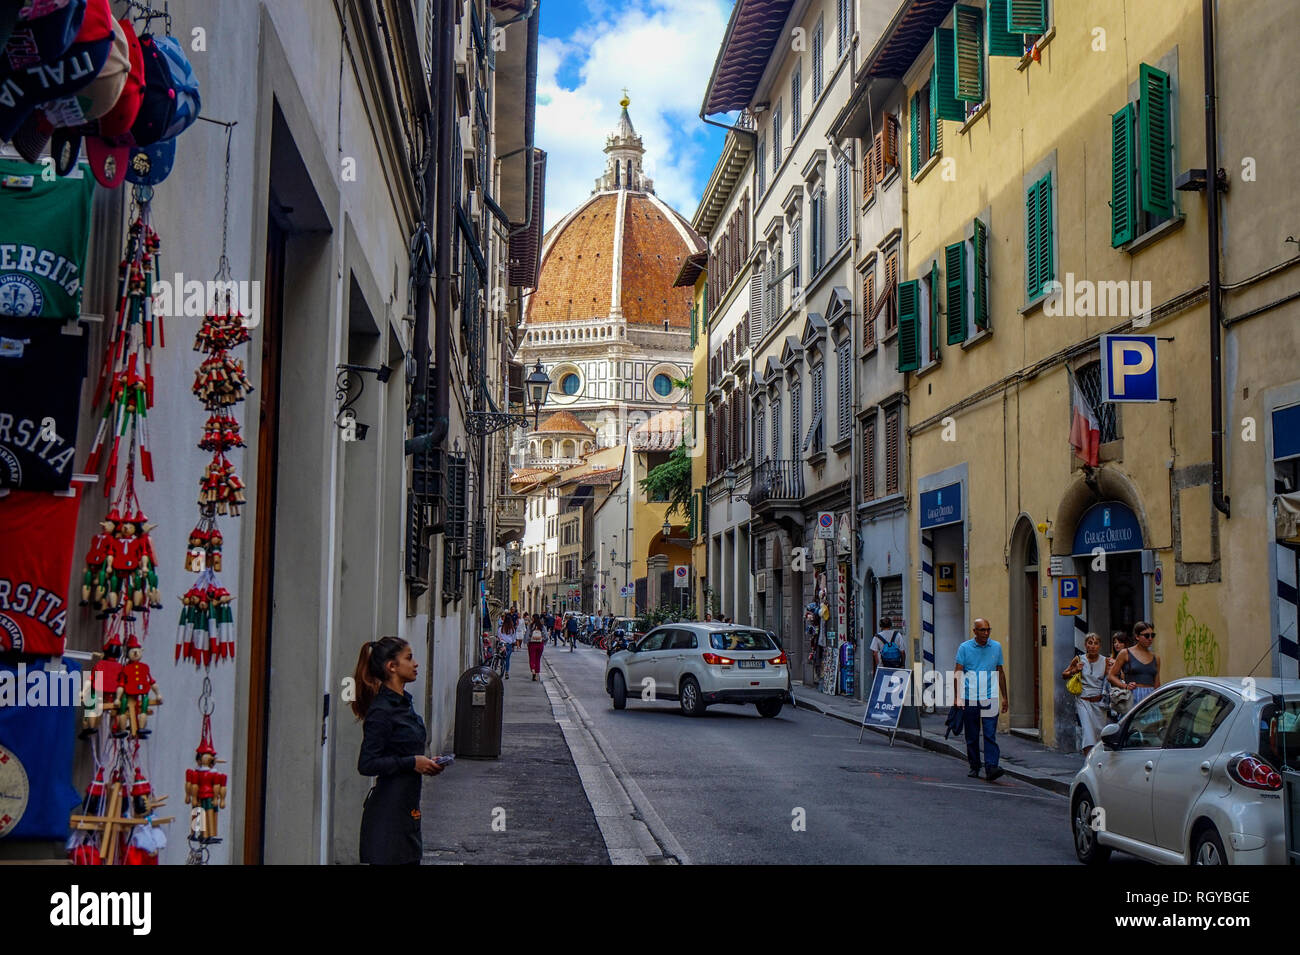 Firenze, Toscana / Italia - 09.15.2017: Cityscape strade di Firenze con il duomo di Firenze alla fine Foto Stock